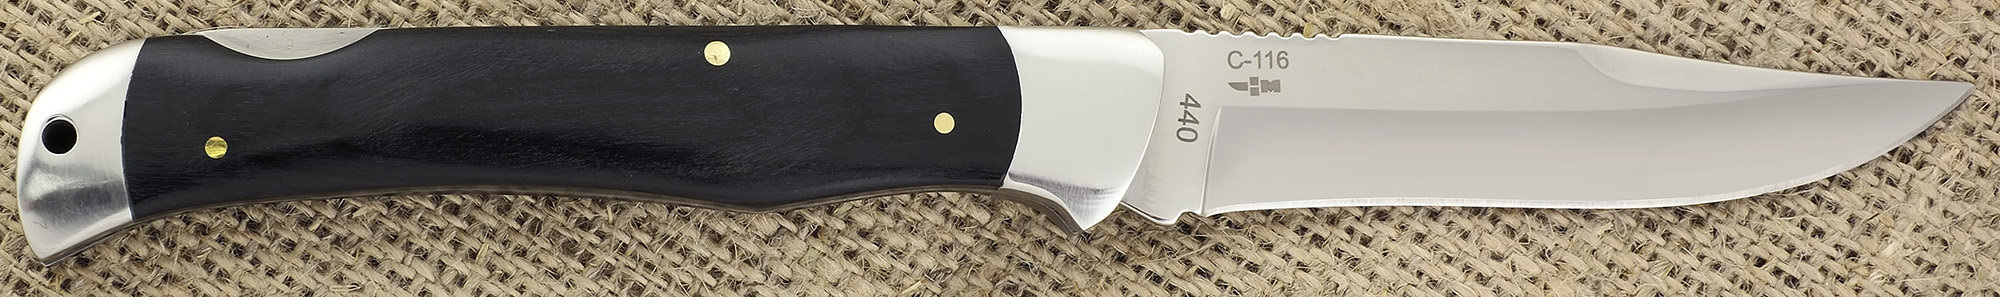 Нож складной зеркальная полировка деревянная рукоять Ножемир Четкий расклад Eagle Eye C-116